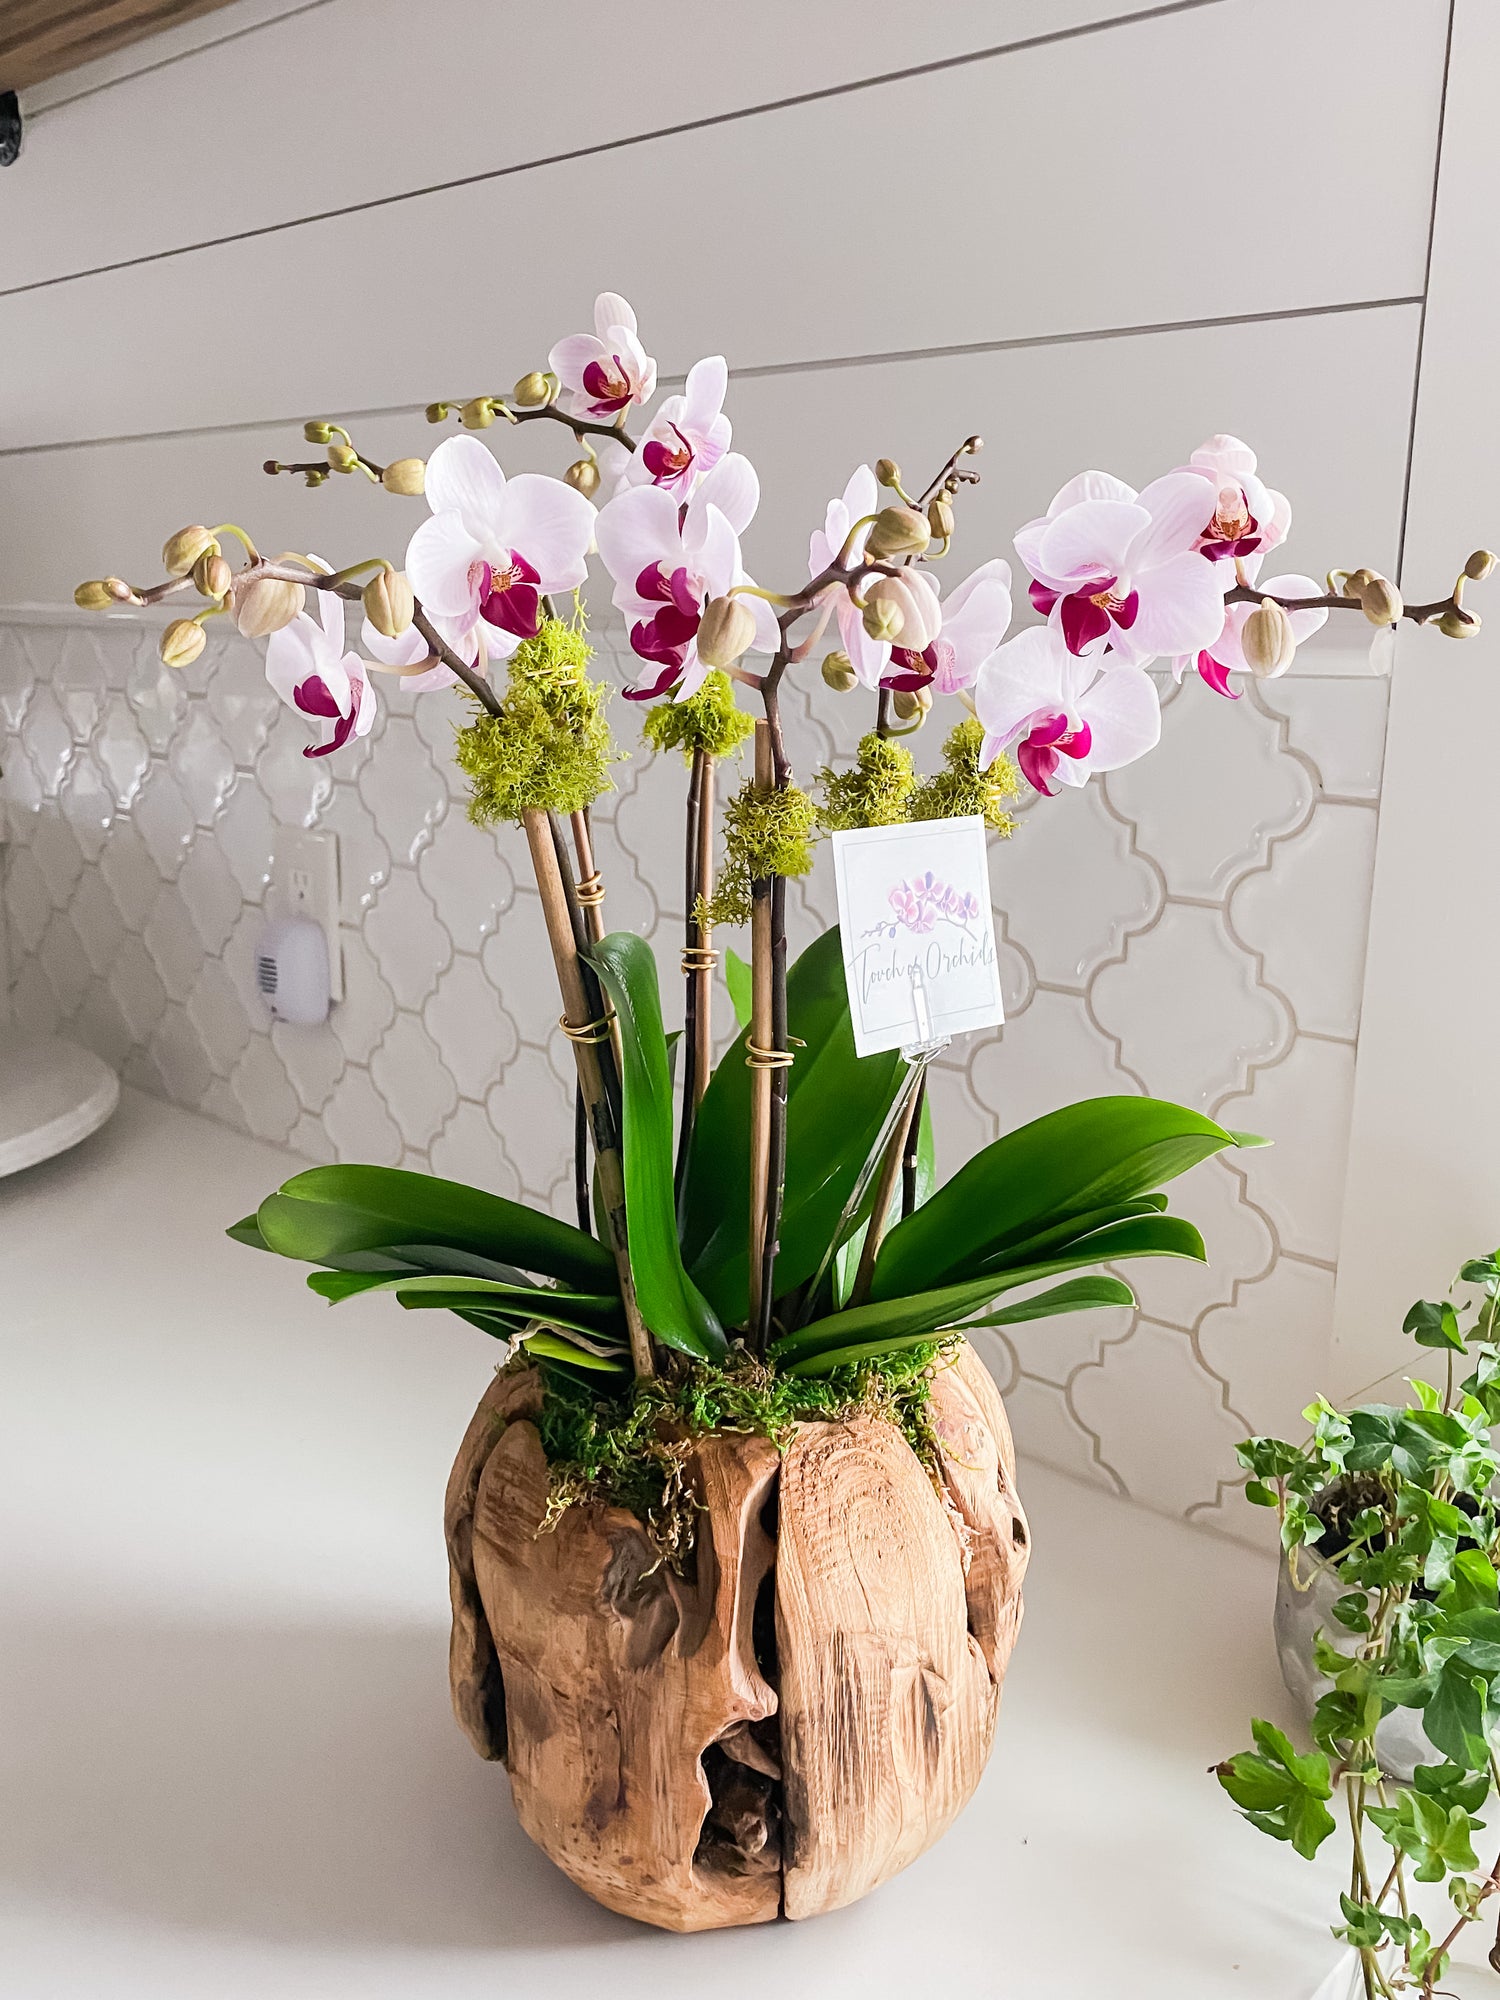 Orchid arrangements